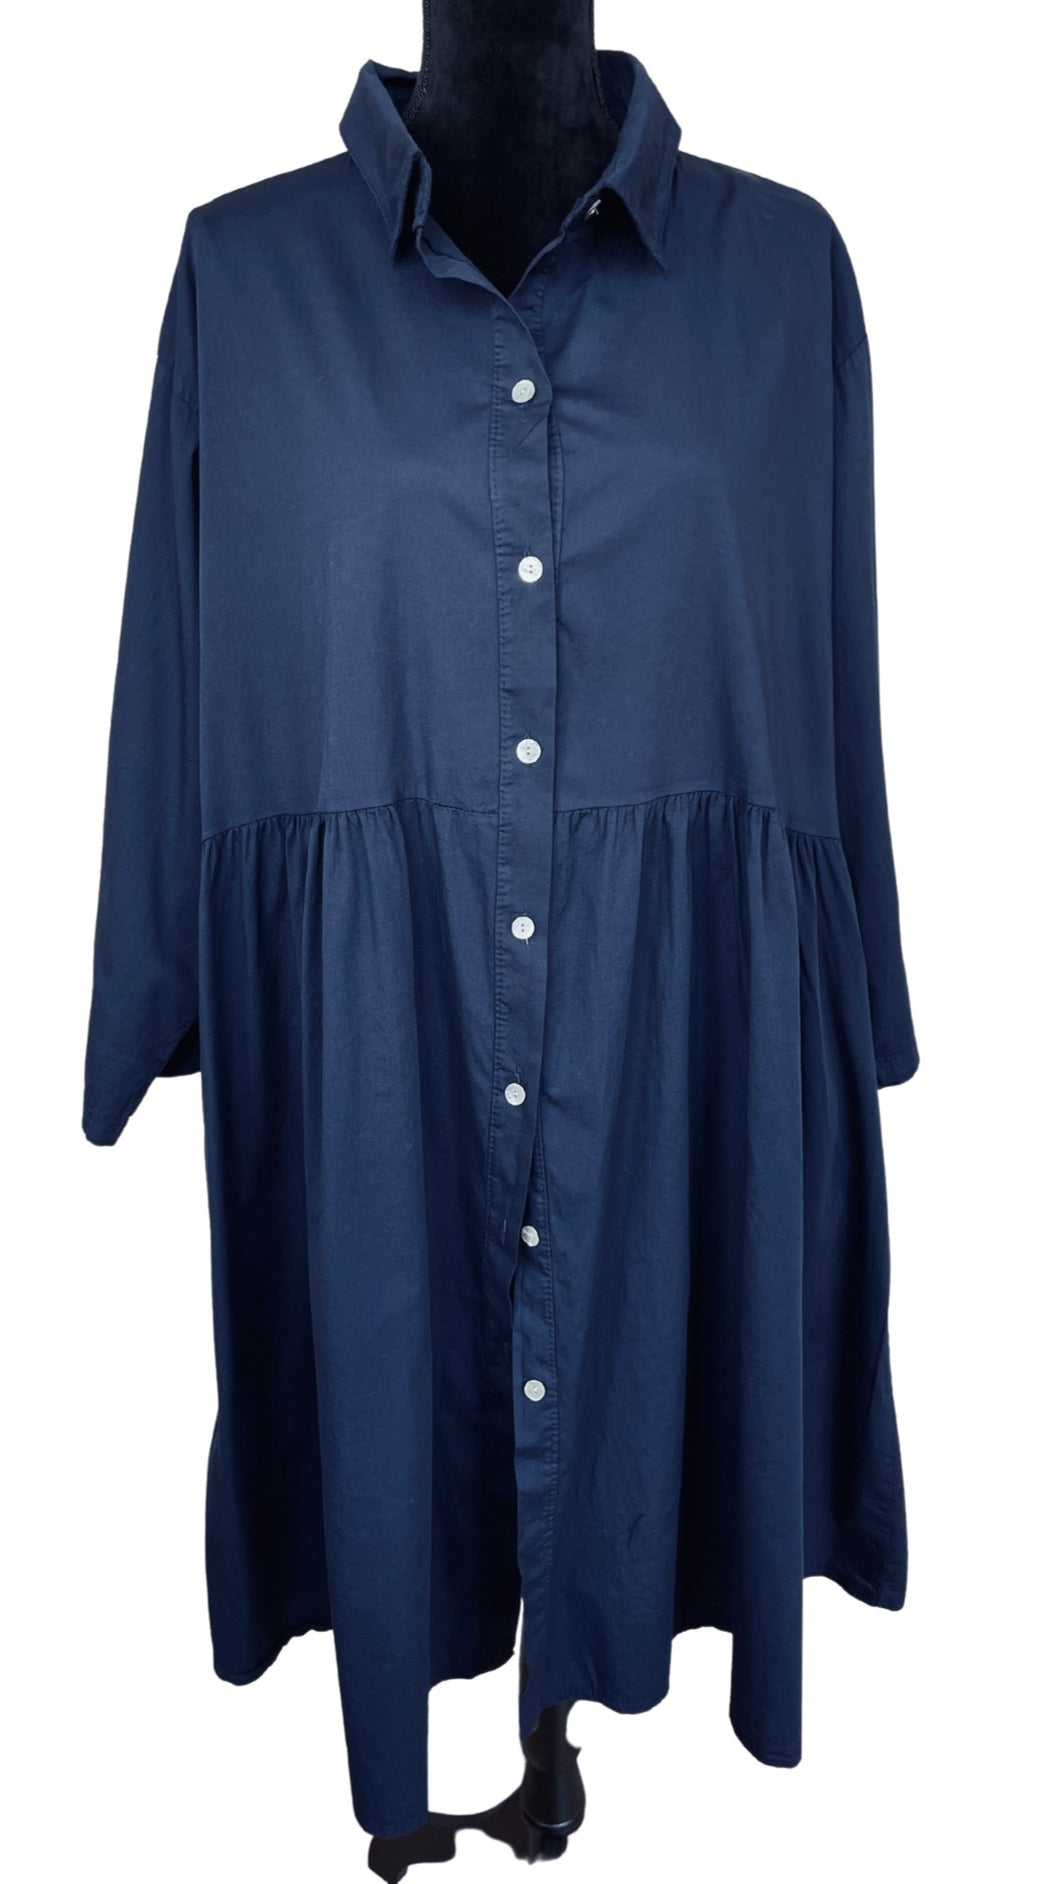 Kratka košulja haljina ili tunika, opseg grudi do 140 cm, (UNI veličina do 56), TAMNO PLAVA